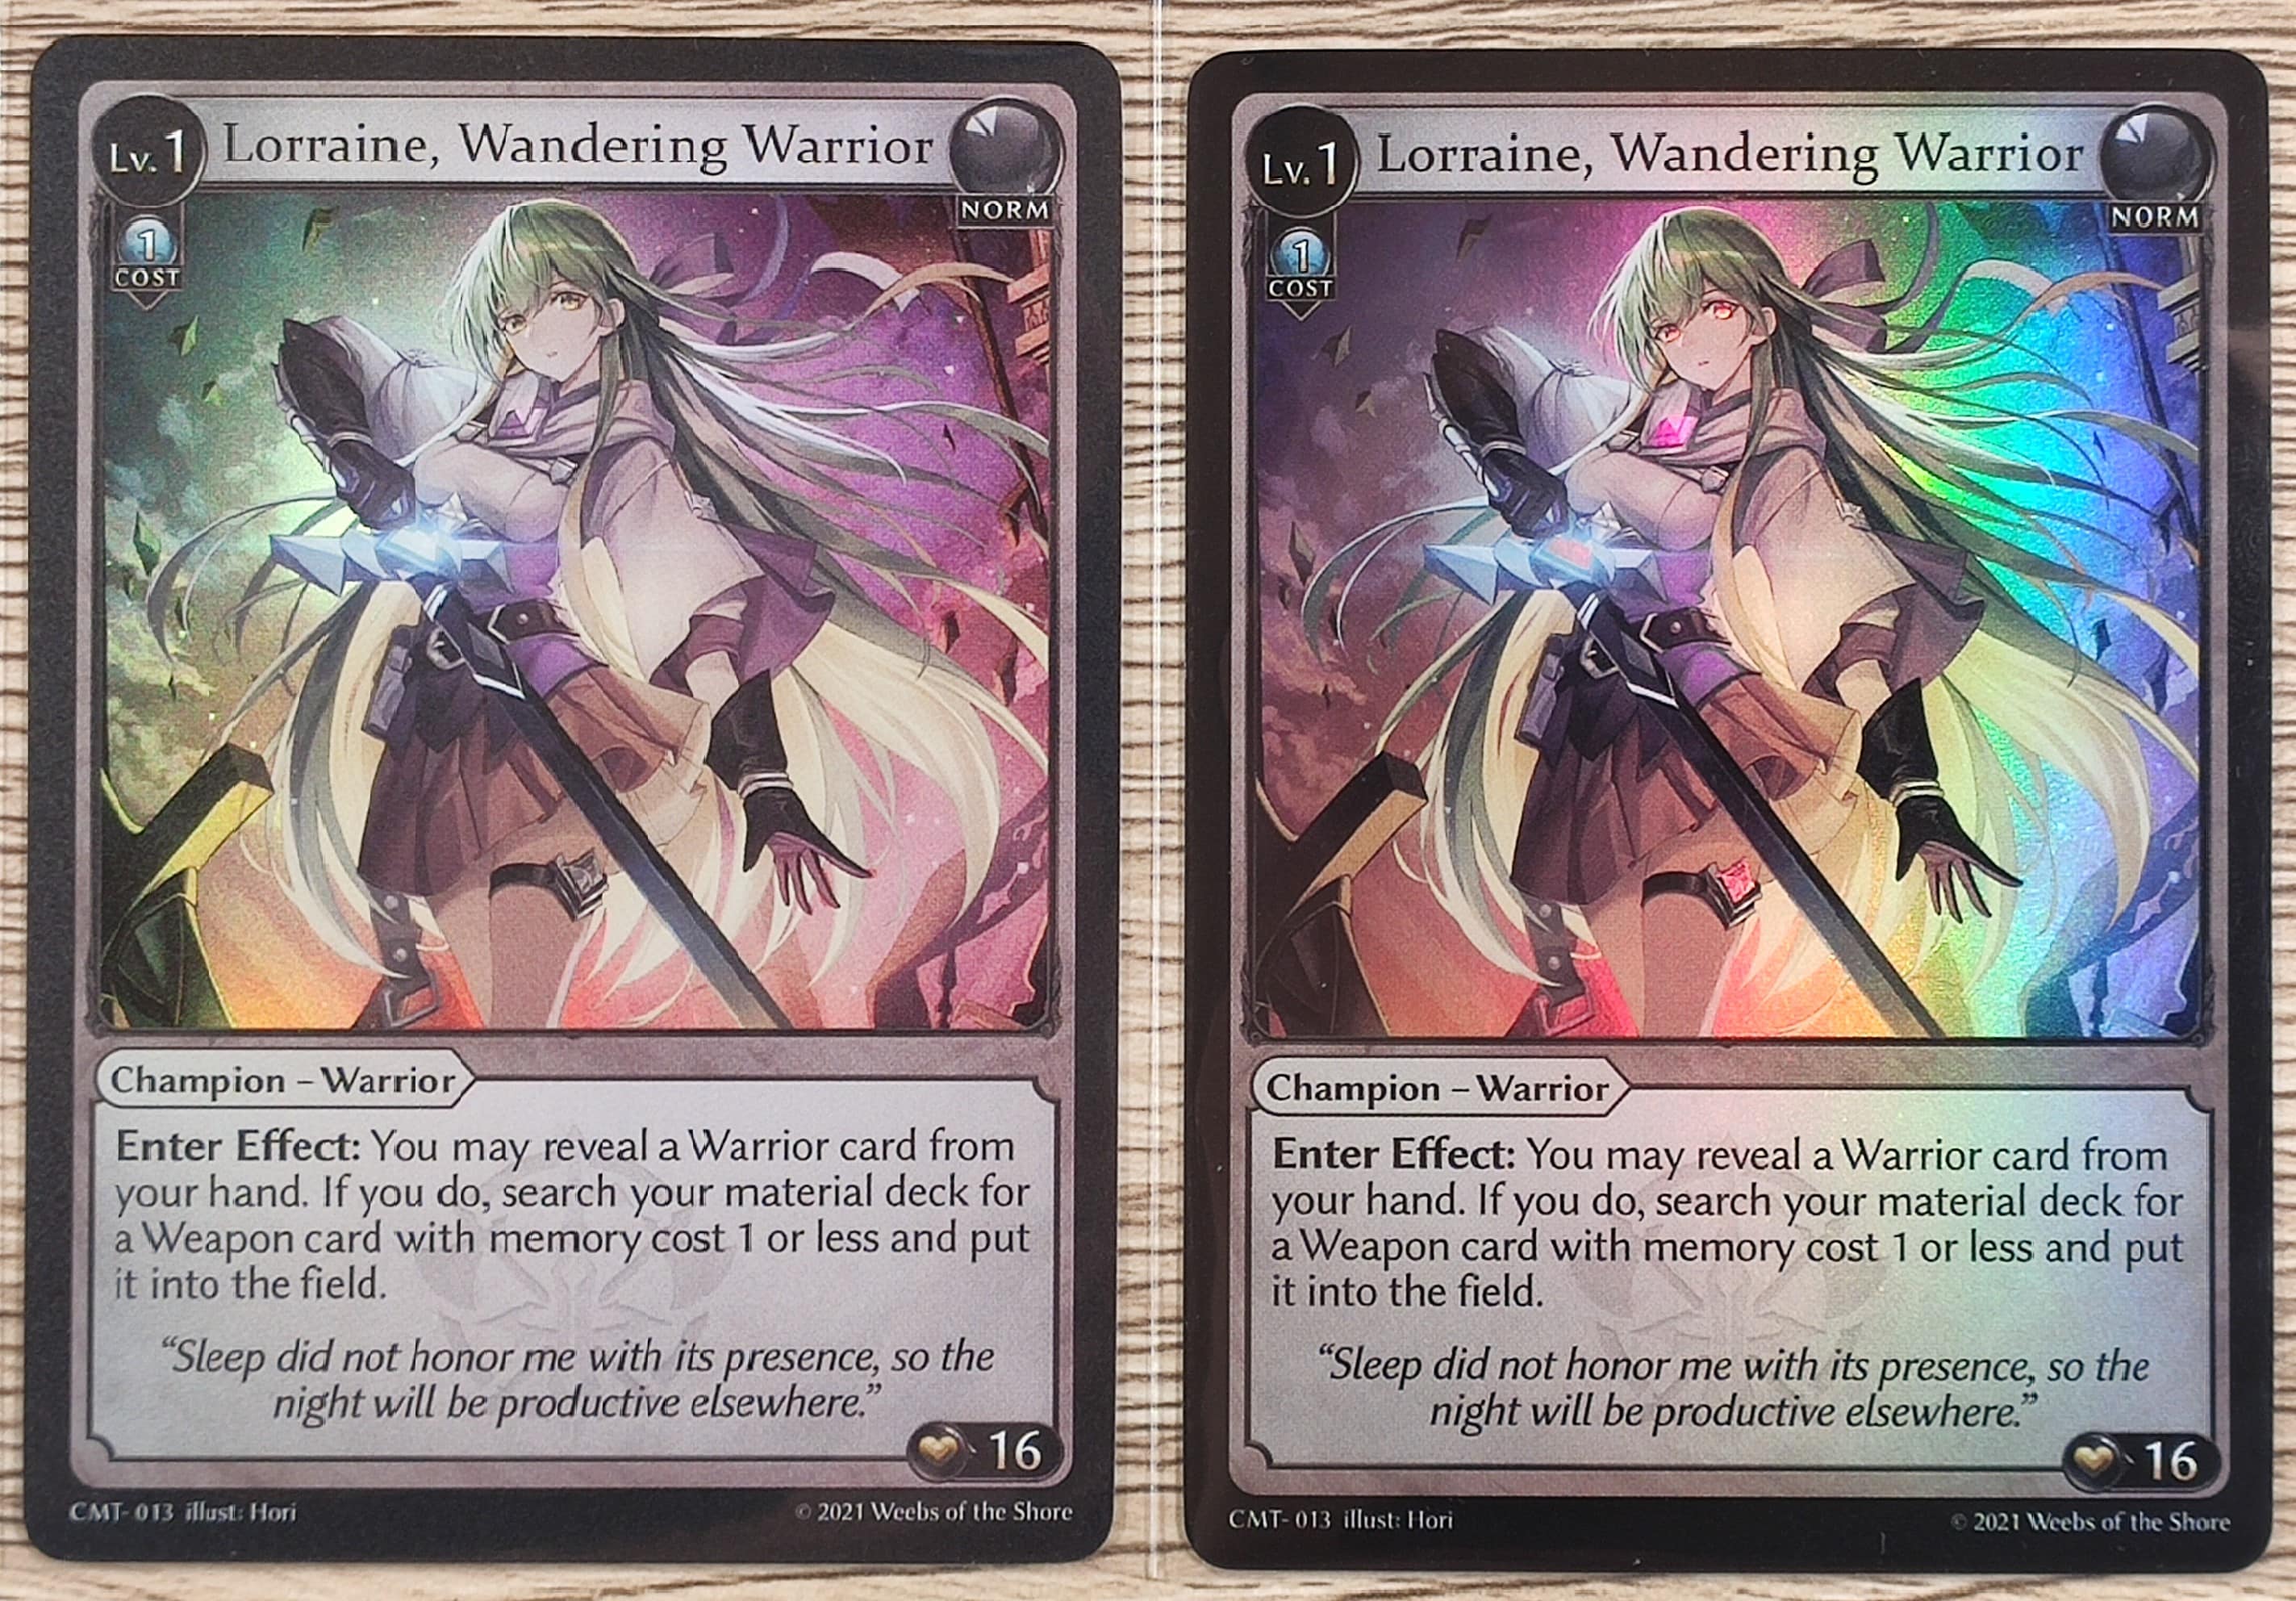 Lorraine, Wandering Warrior (CMT-013) matte foil (left) vs. oil foil (right).